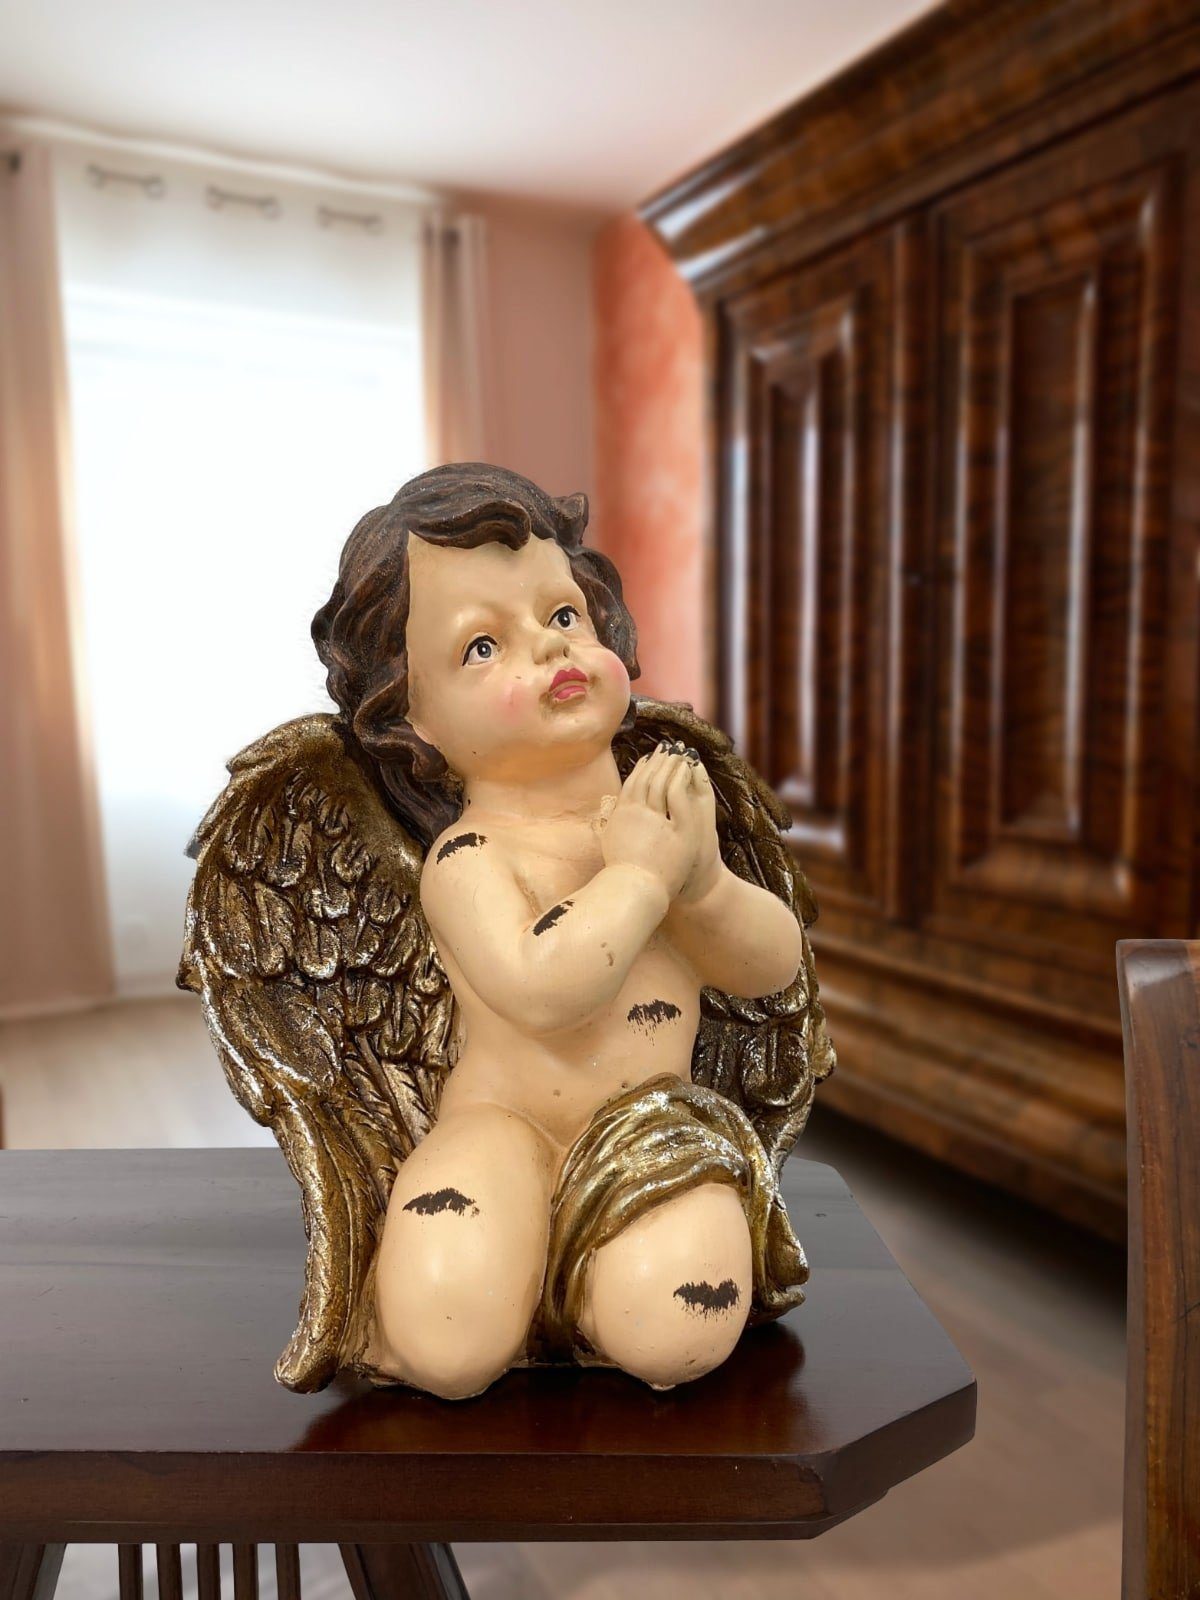 Aubaho Dekofigur Skulptur betender Engel Putte Figur Putti Antik-Stil Kunststein 26cm